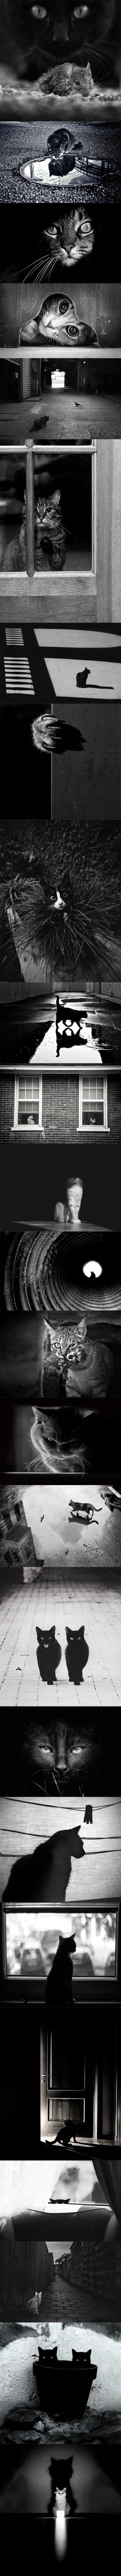 GALERIJA: Misteriozni život mačaka zabilježen crno-bijelim slikama